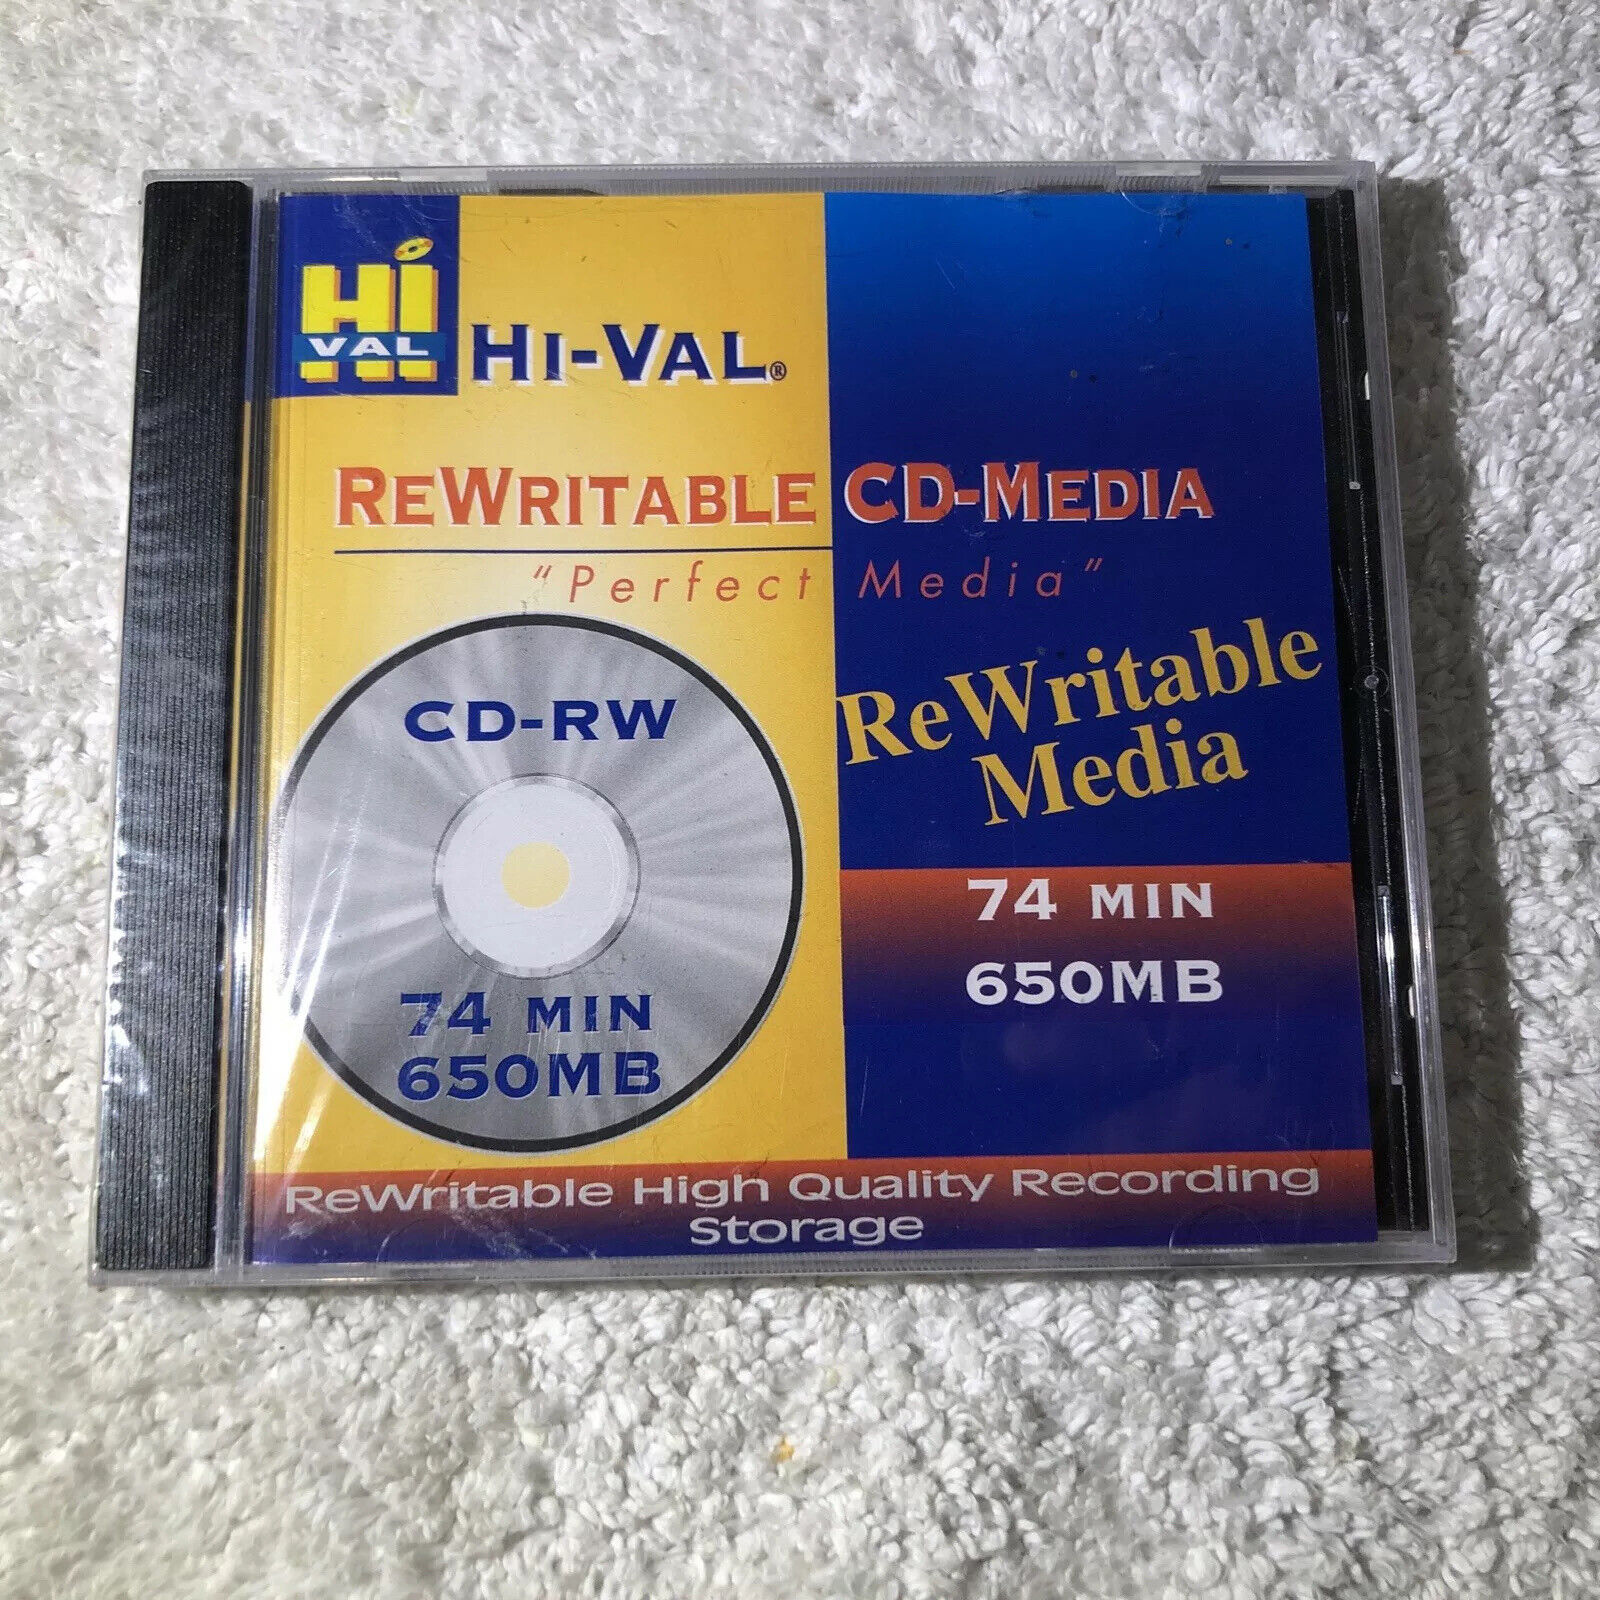 Hi-Val Rewritable Cd-Media CD-RW 74 Minutes 650 MB